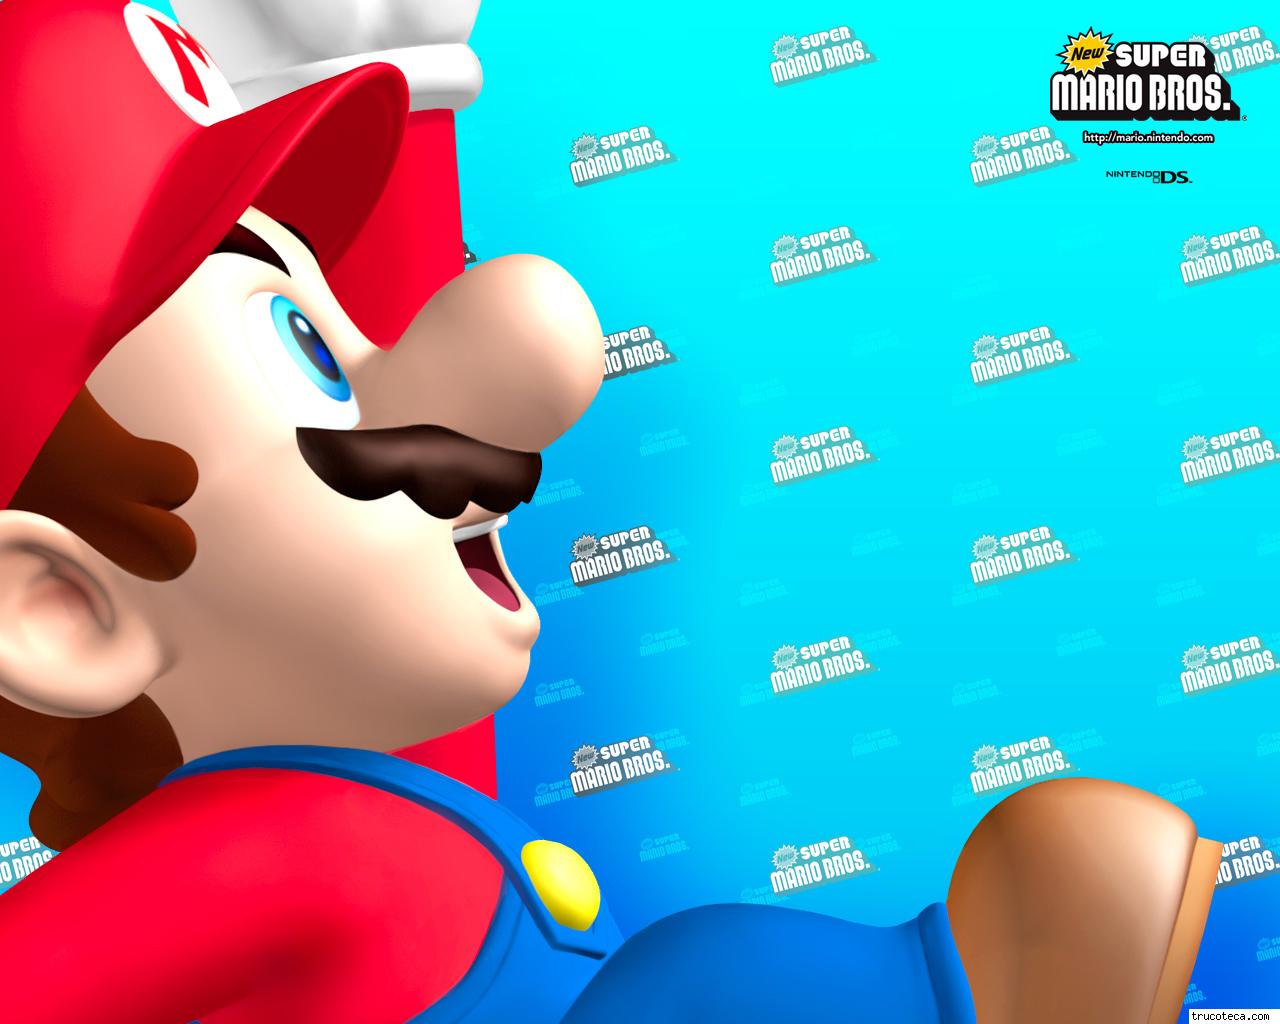 El futuro de Nintendo es solo Mario Bros